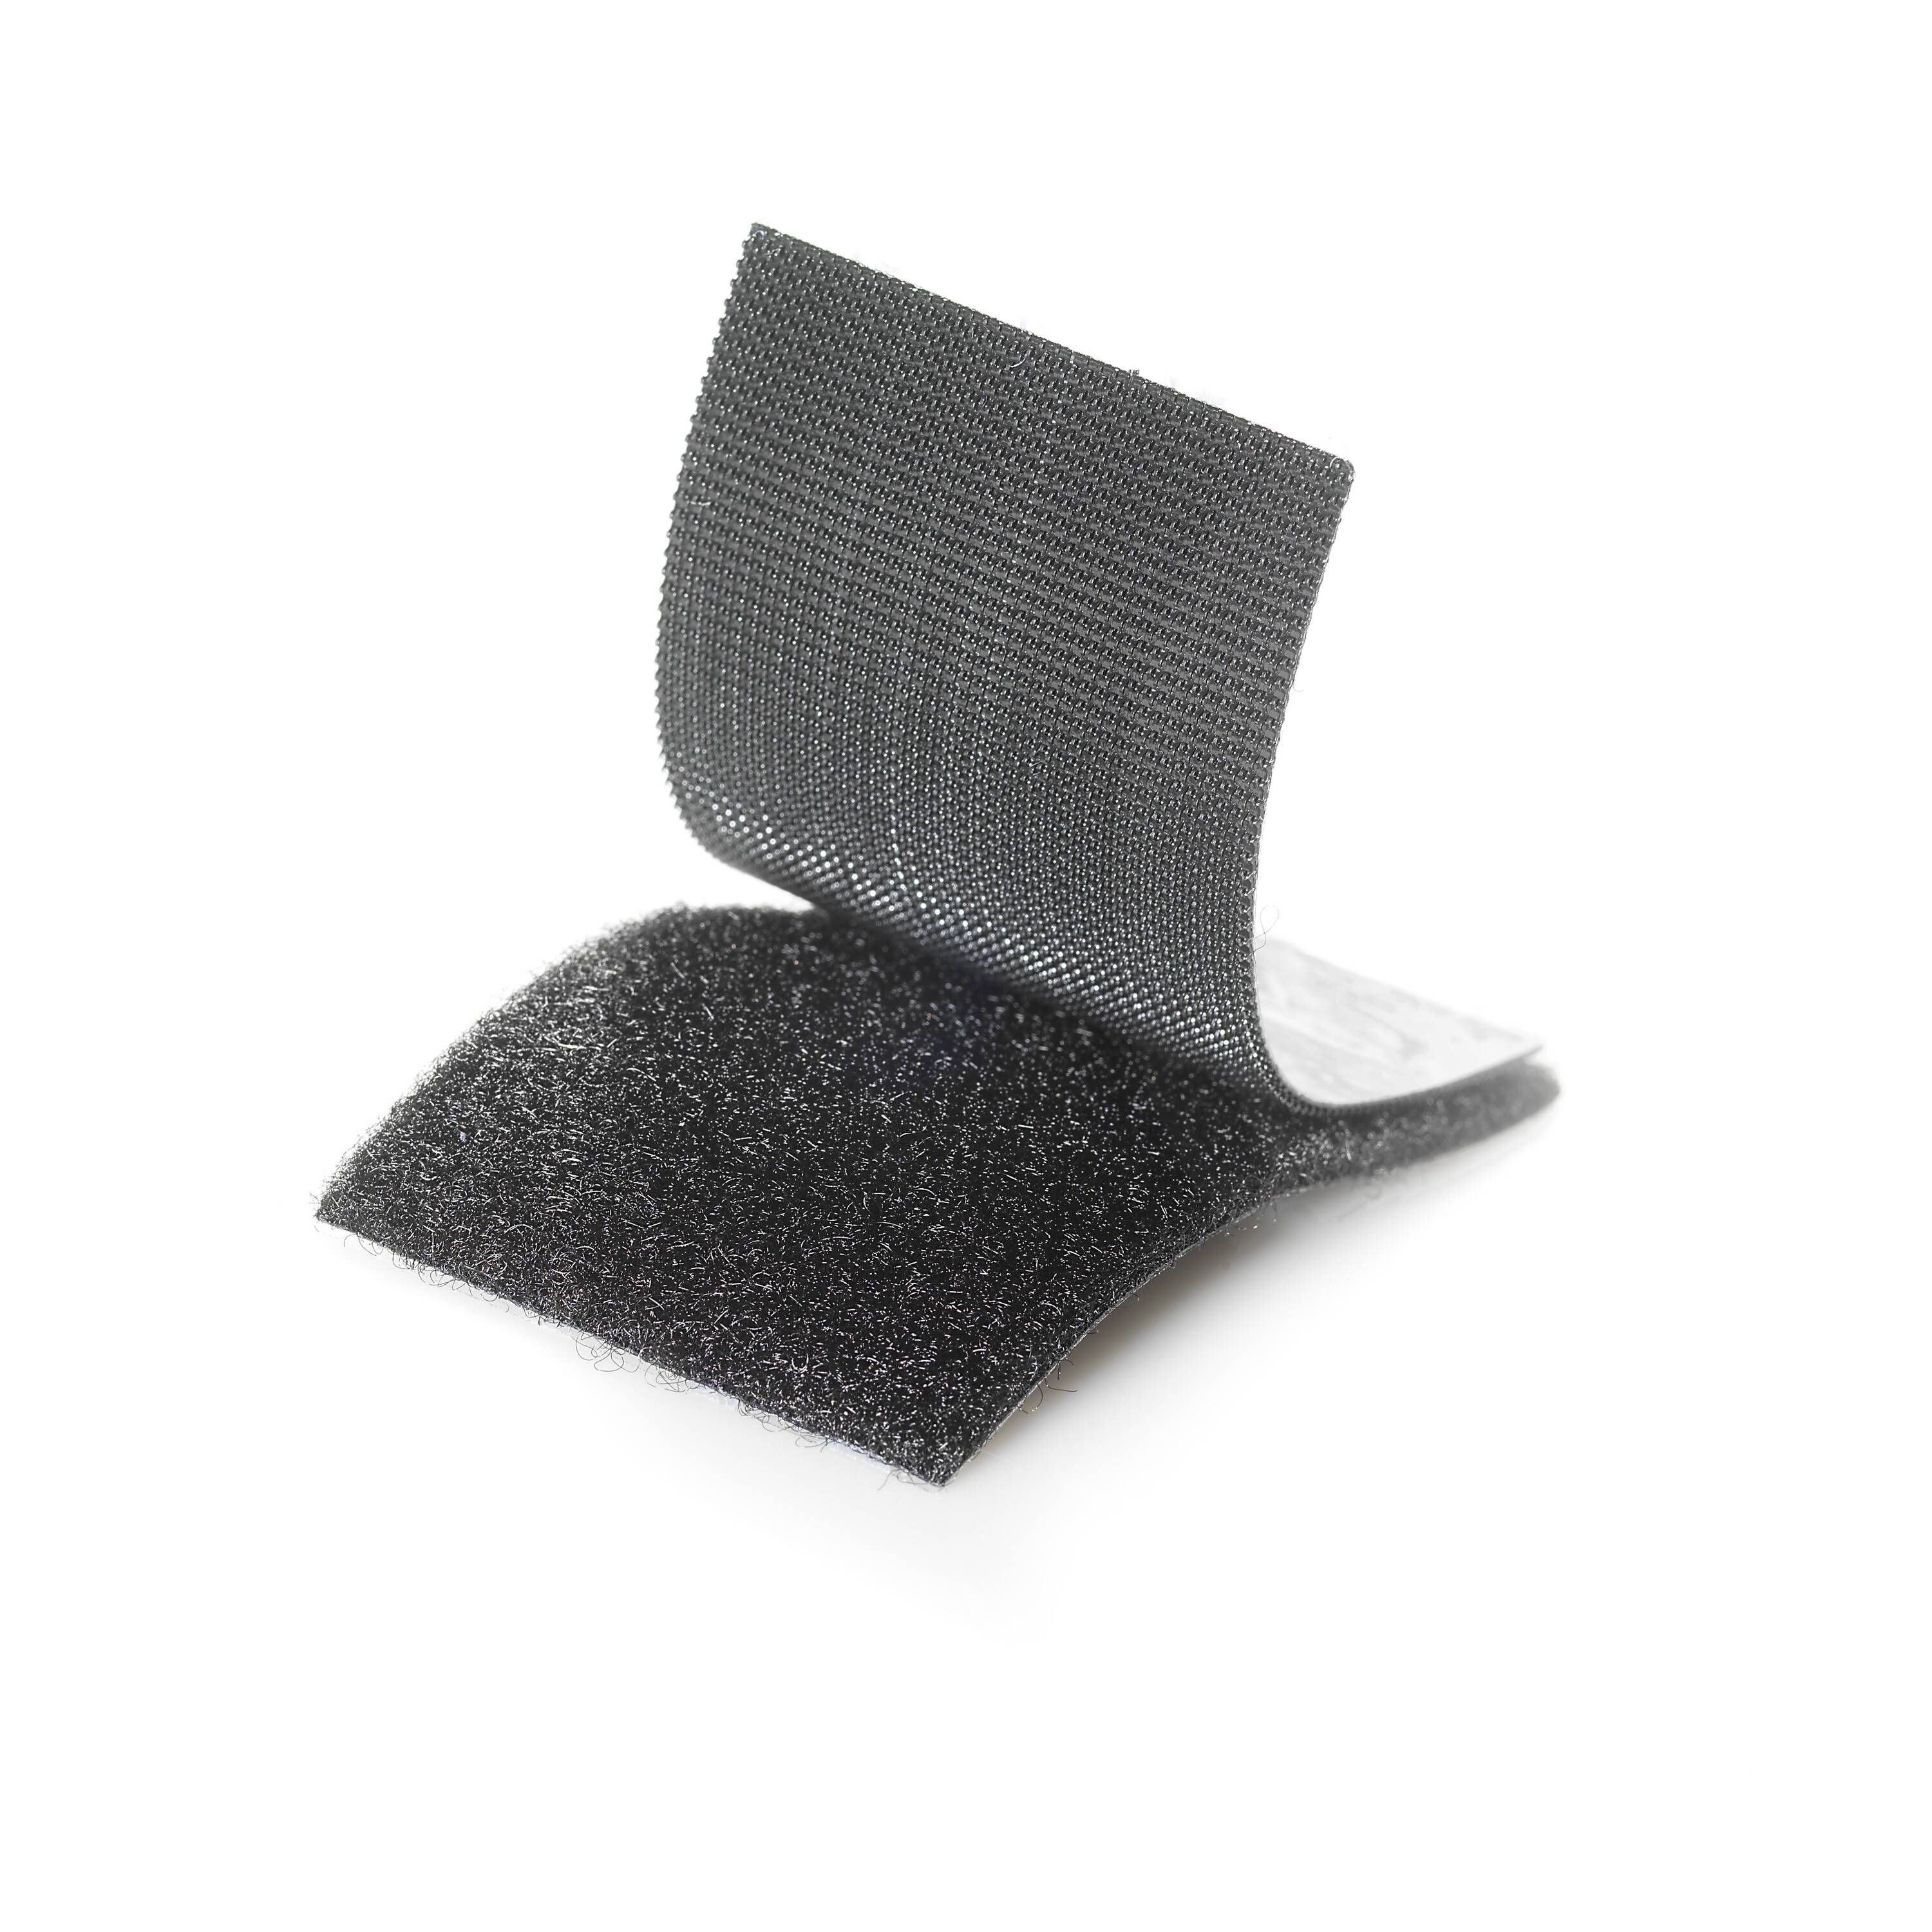 Velcro Industrial Strength Velcro Tape, Black, 15-ft x 2-in, 1-pk